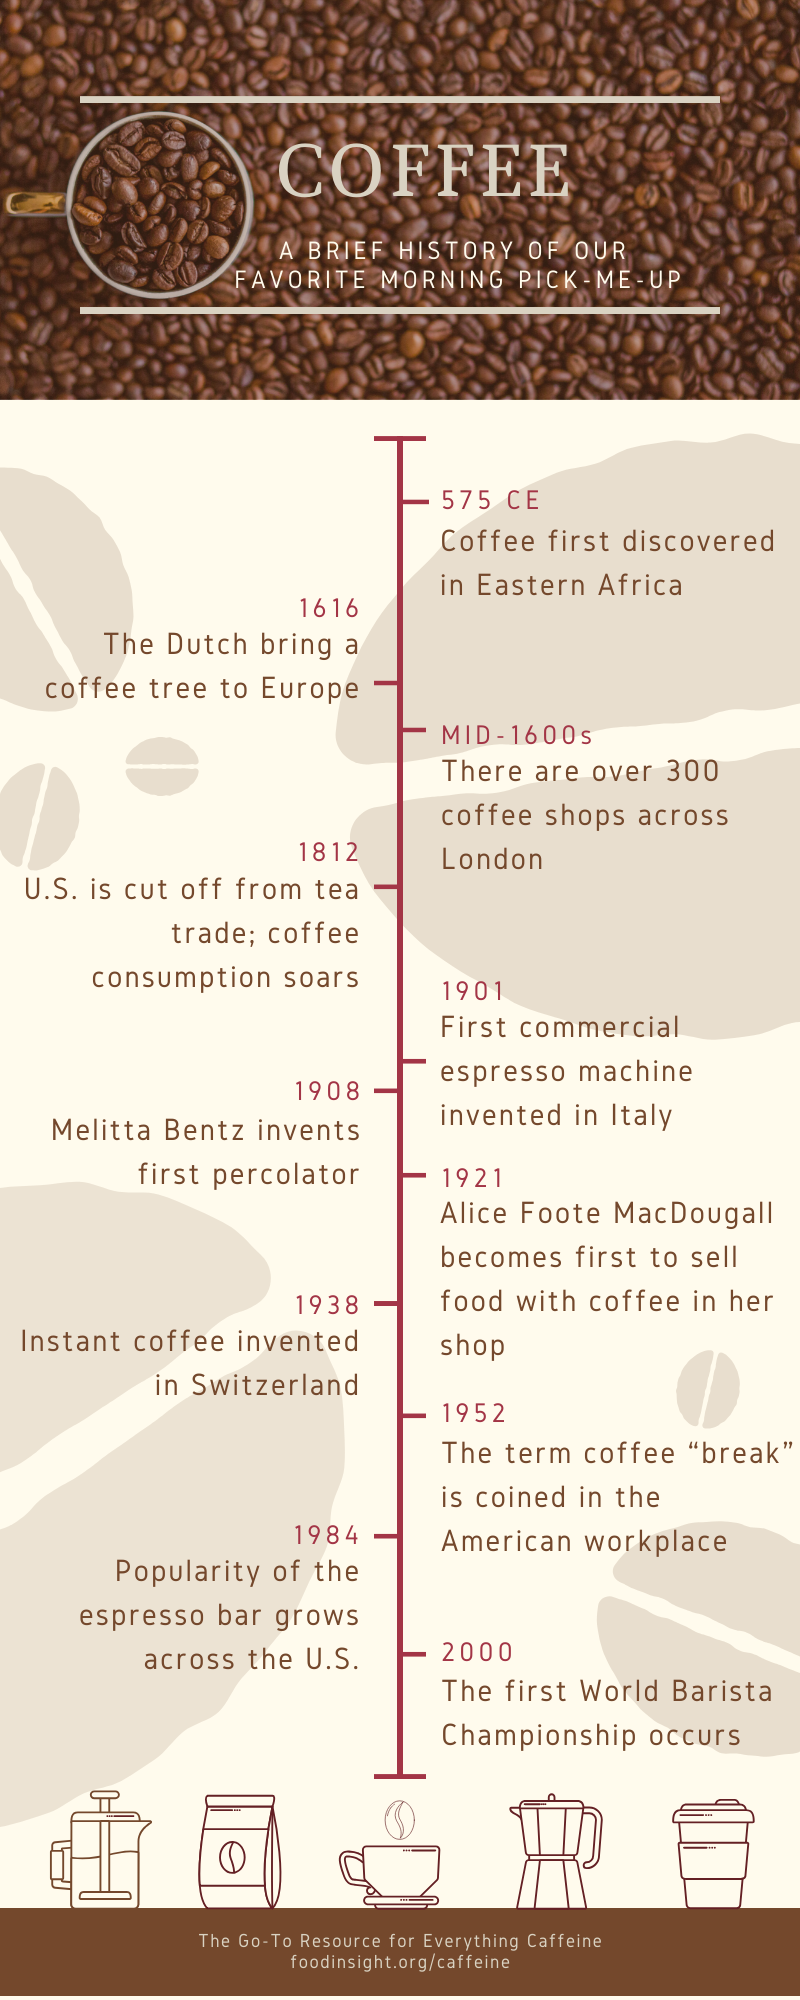 Historien om kaffebrygging